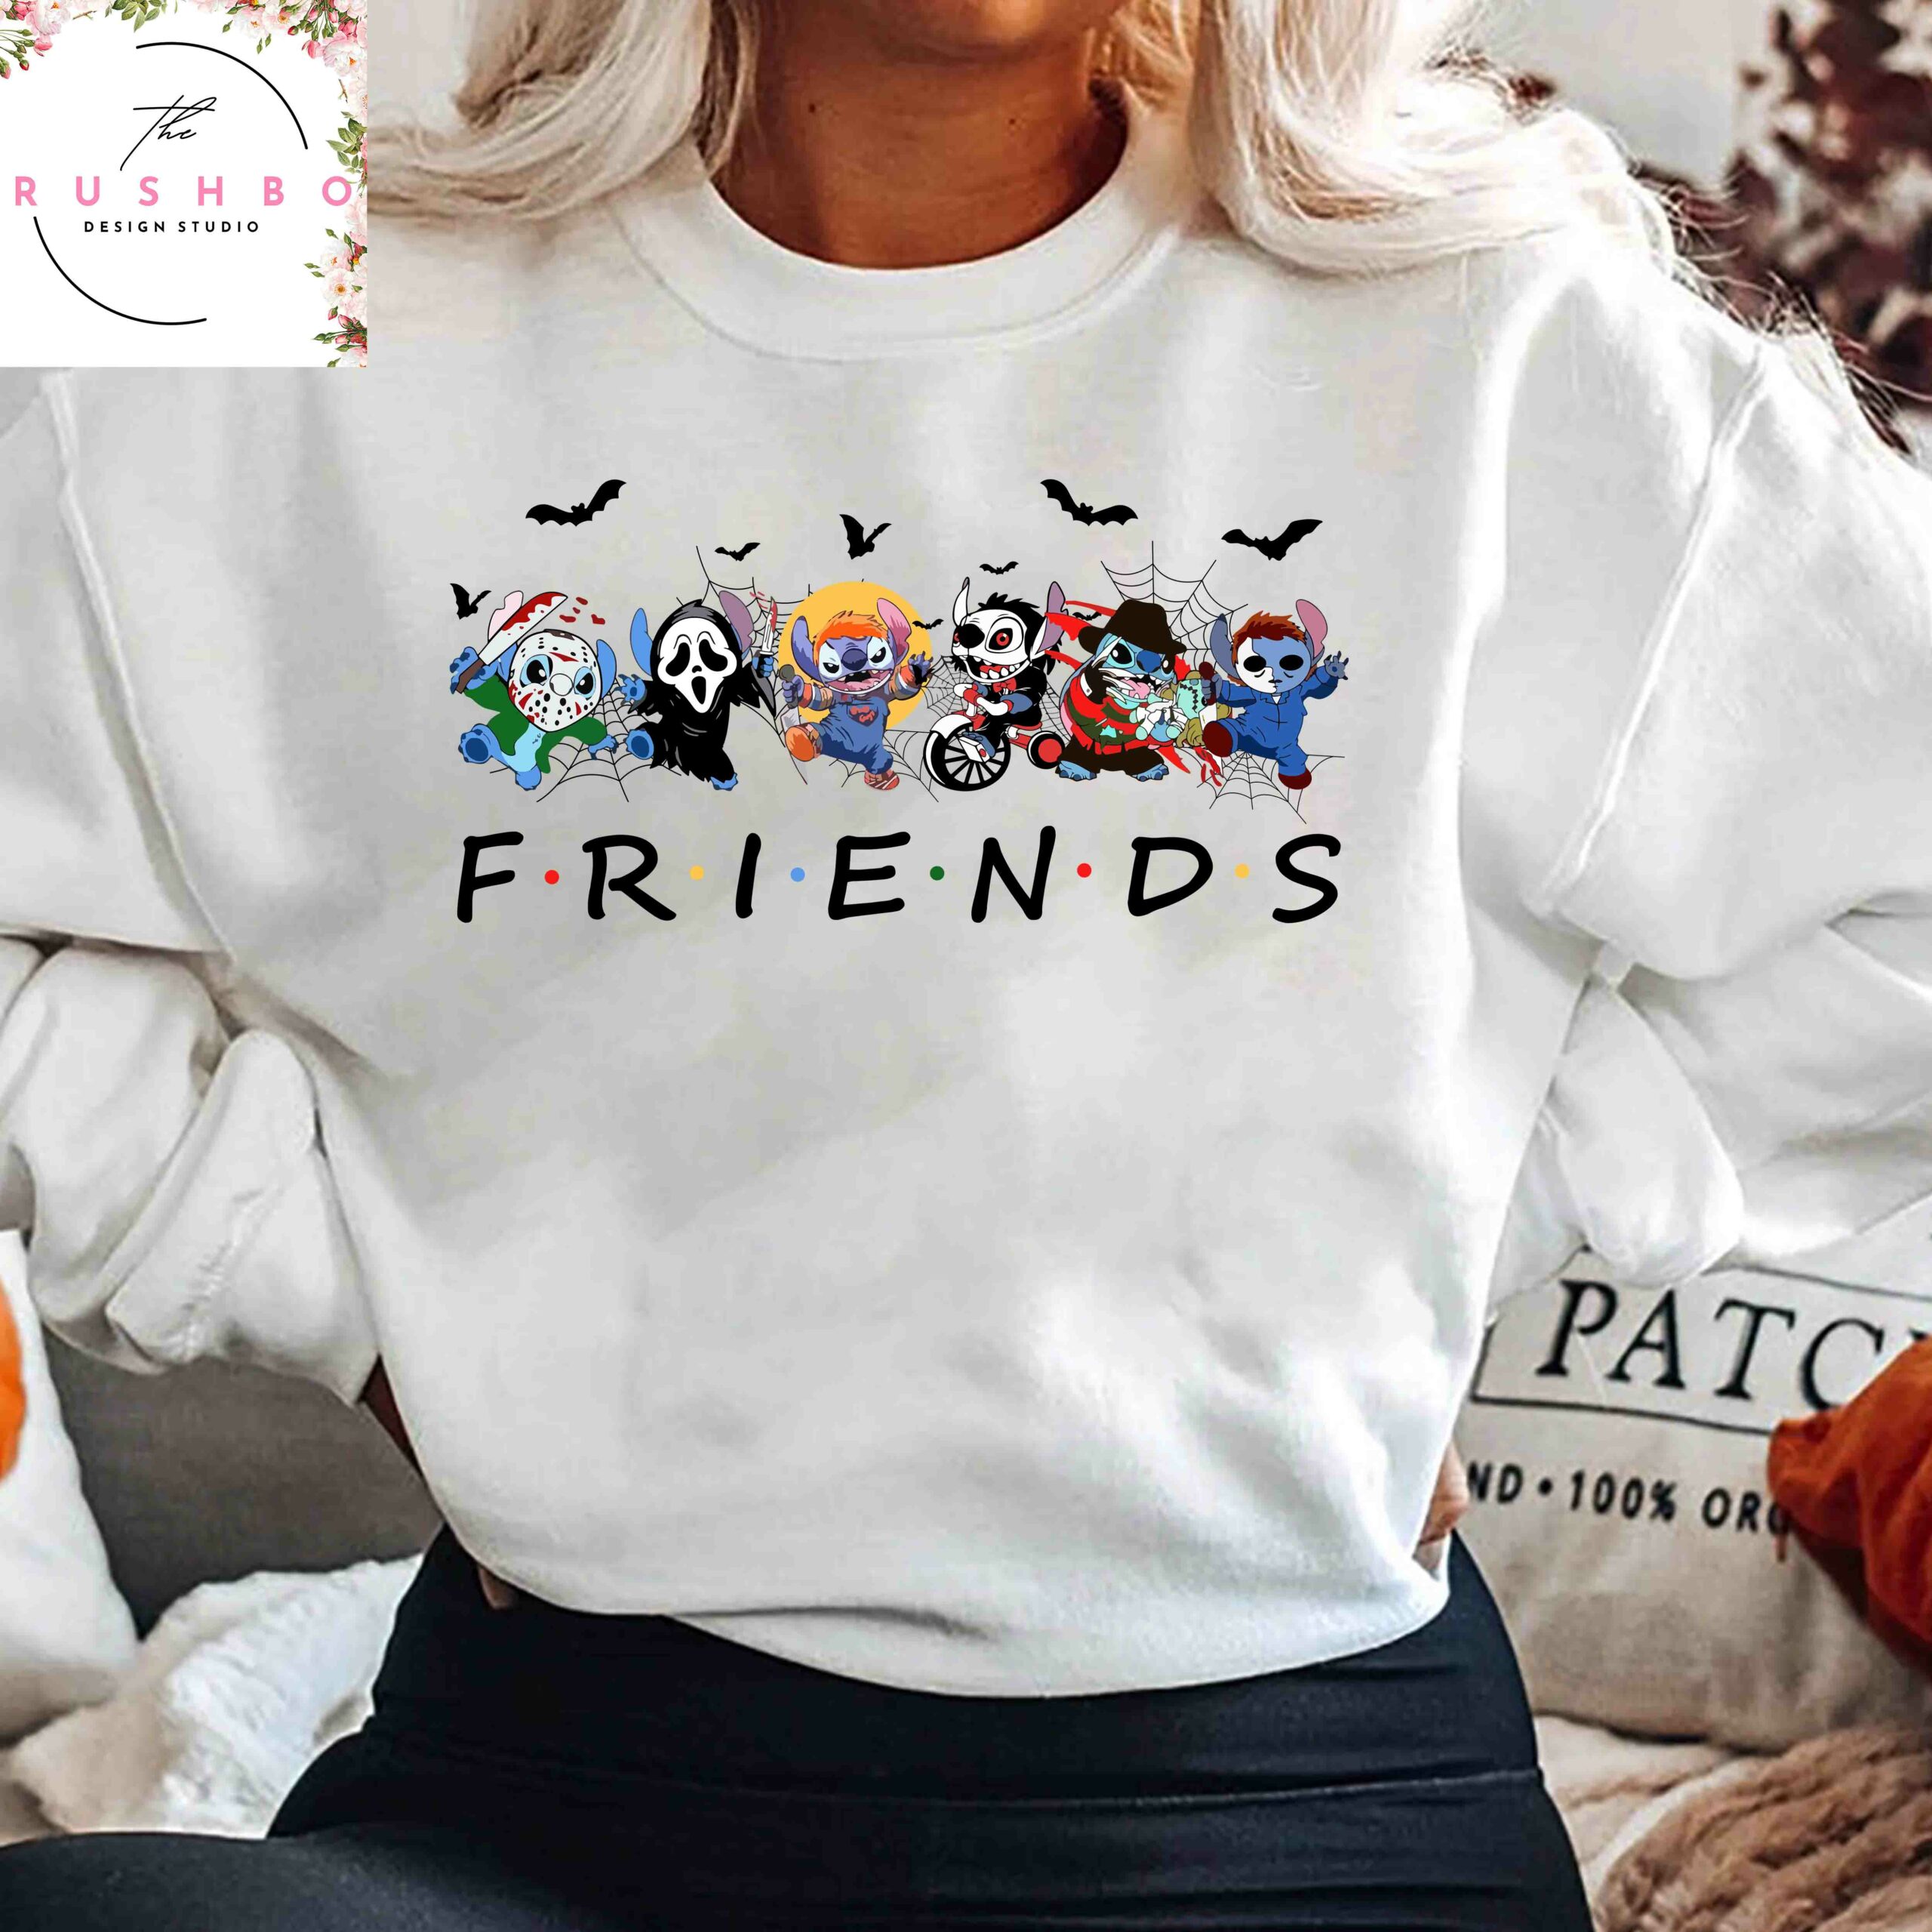 Stitch Embroidered Sweatshirt, Stitch Horror Halloween Sweater, Disney  Sweater